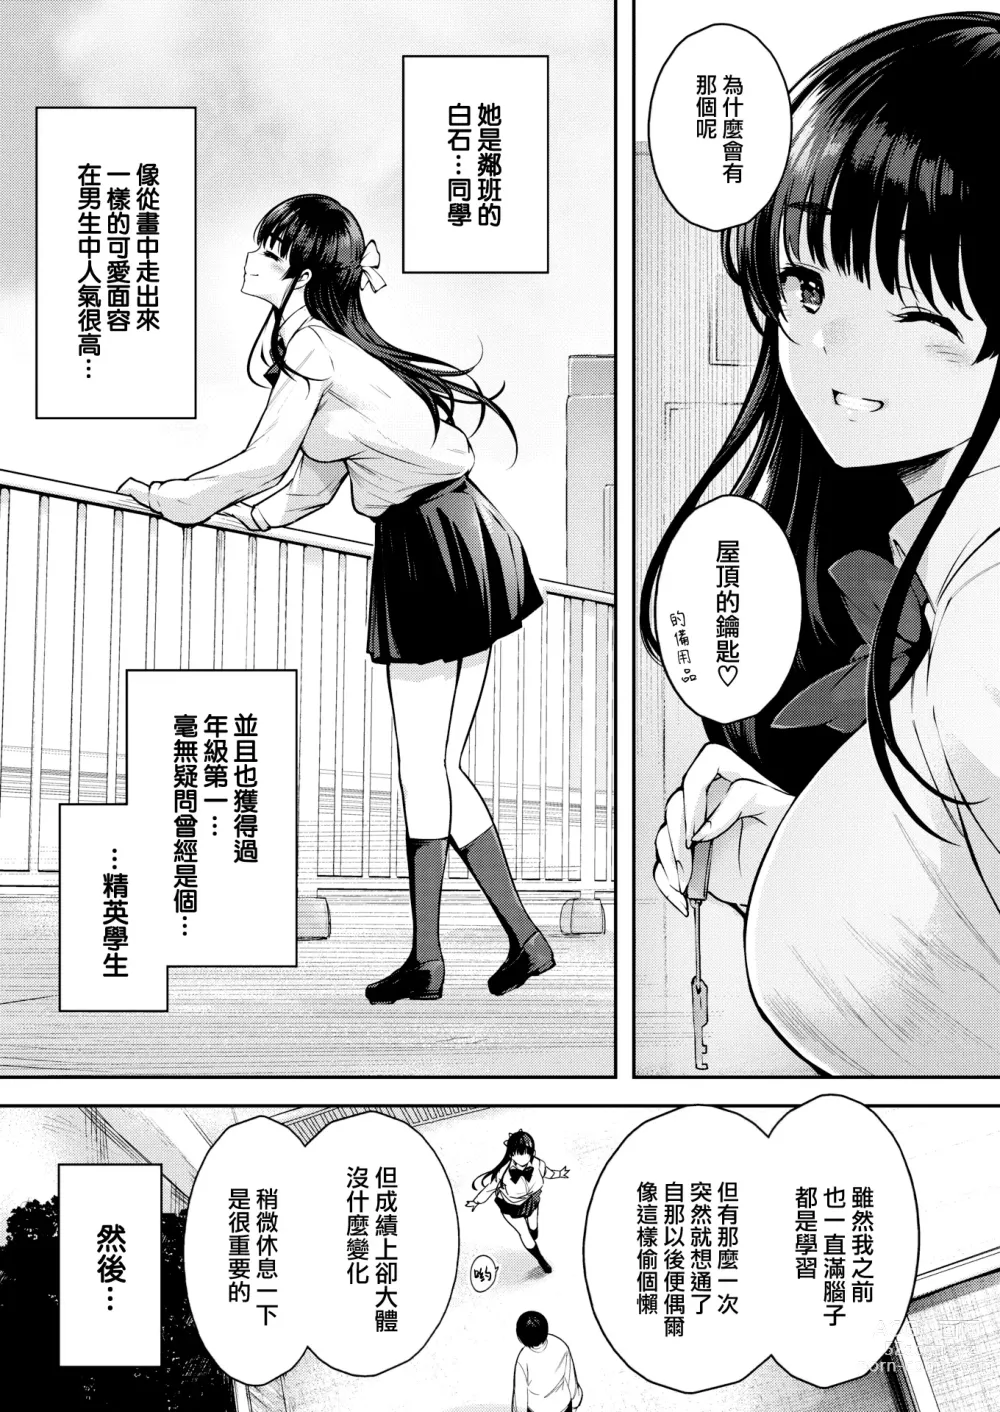 Page 4 of manga Aoi Sora no Mashita de